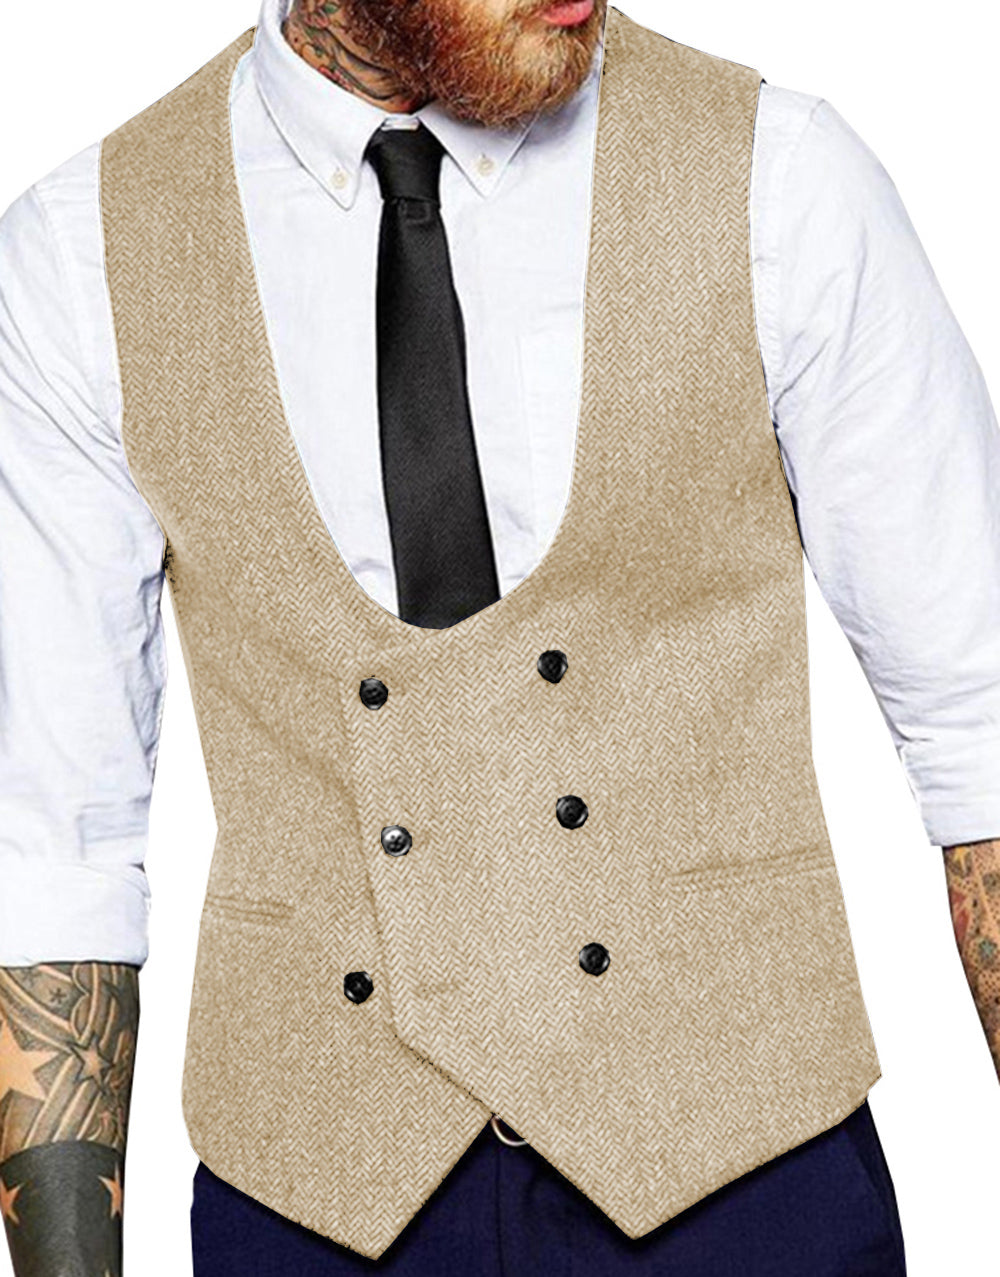 Men's Casual Double Breasted Tweed Herringbone U Neck Waistcoat menseventwear